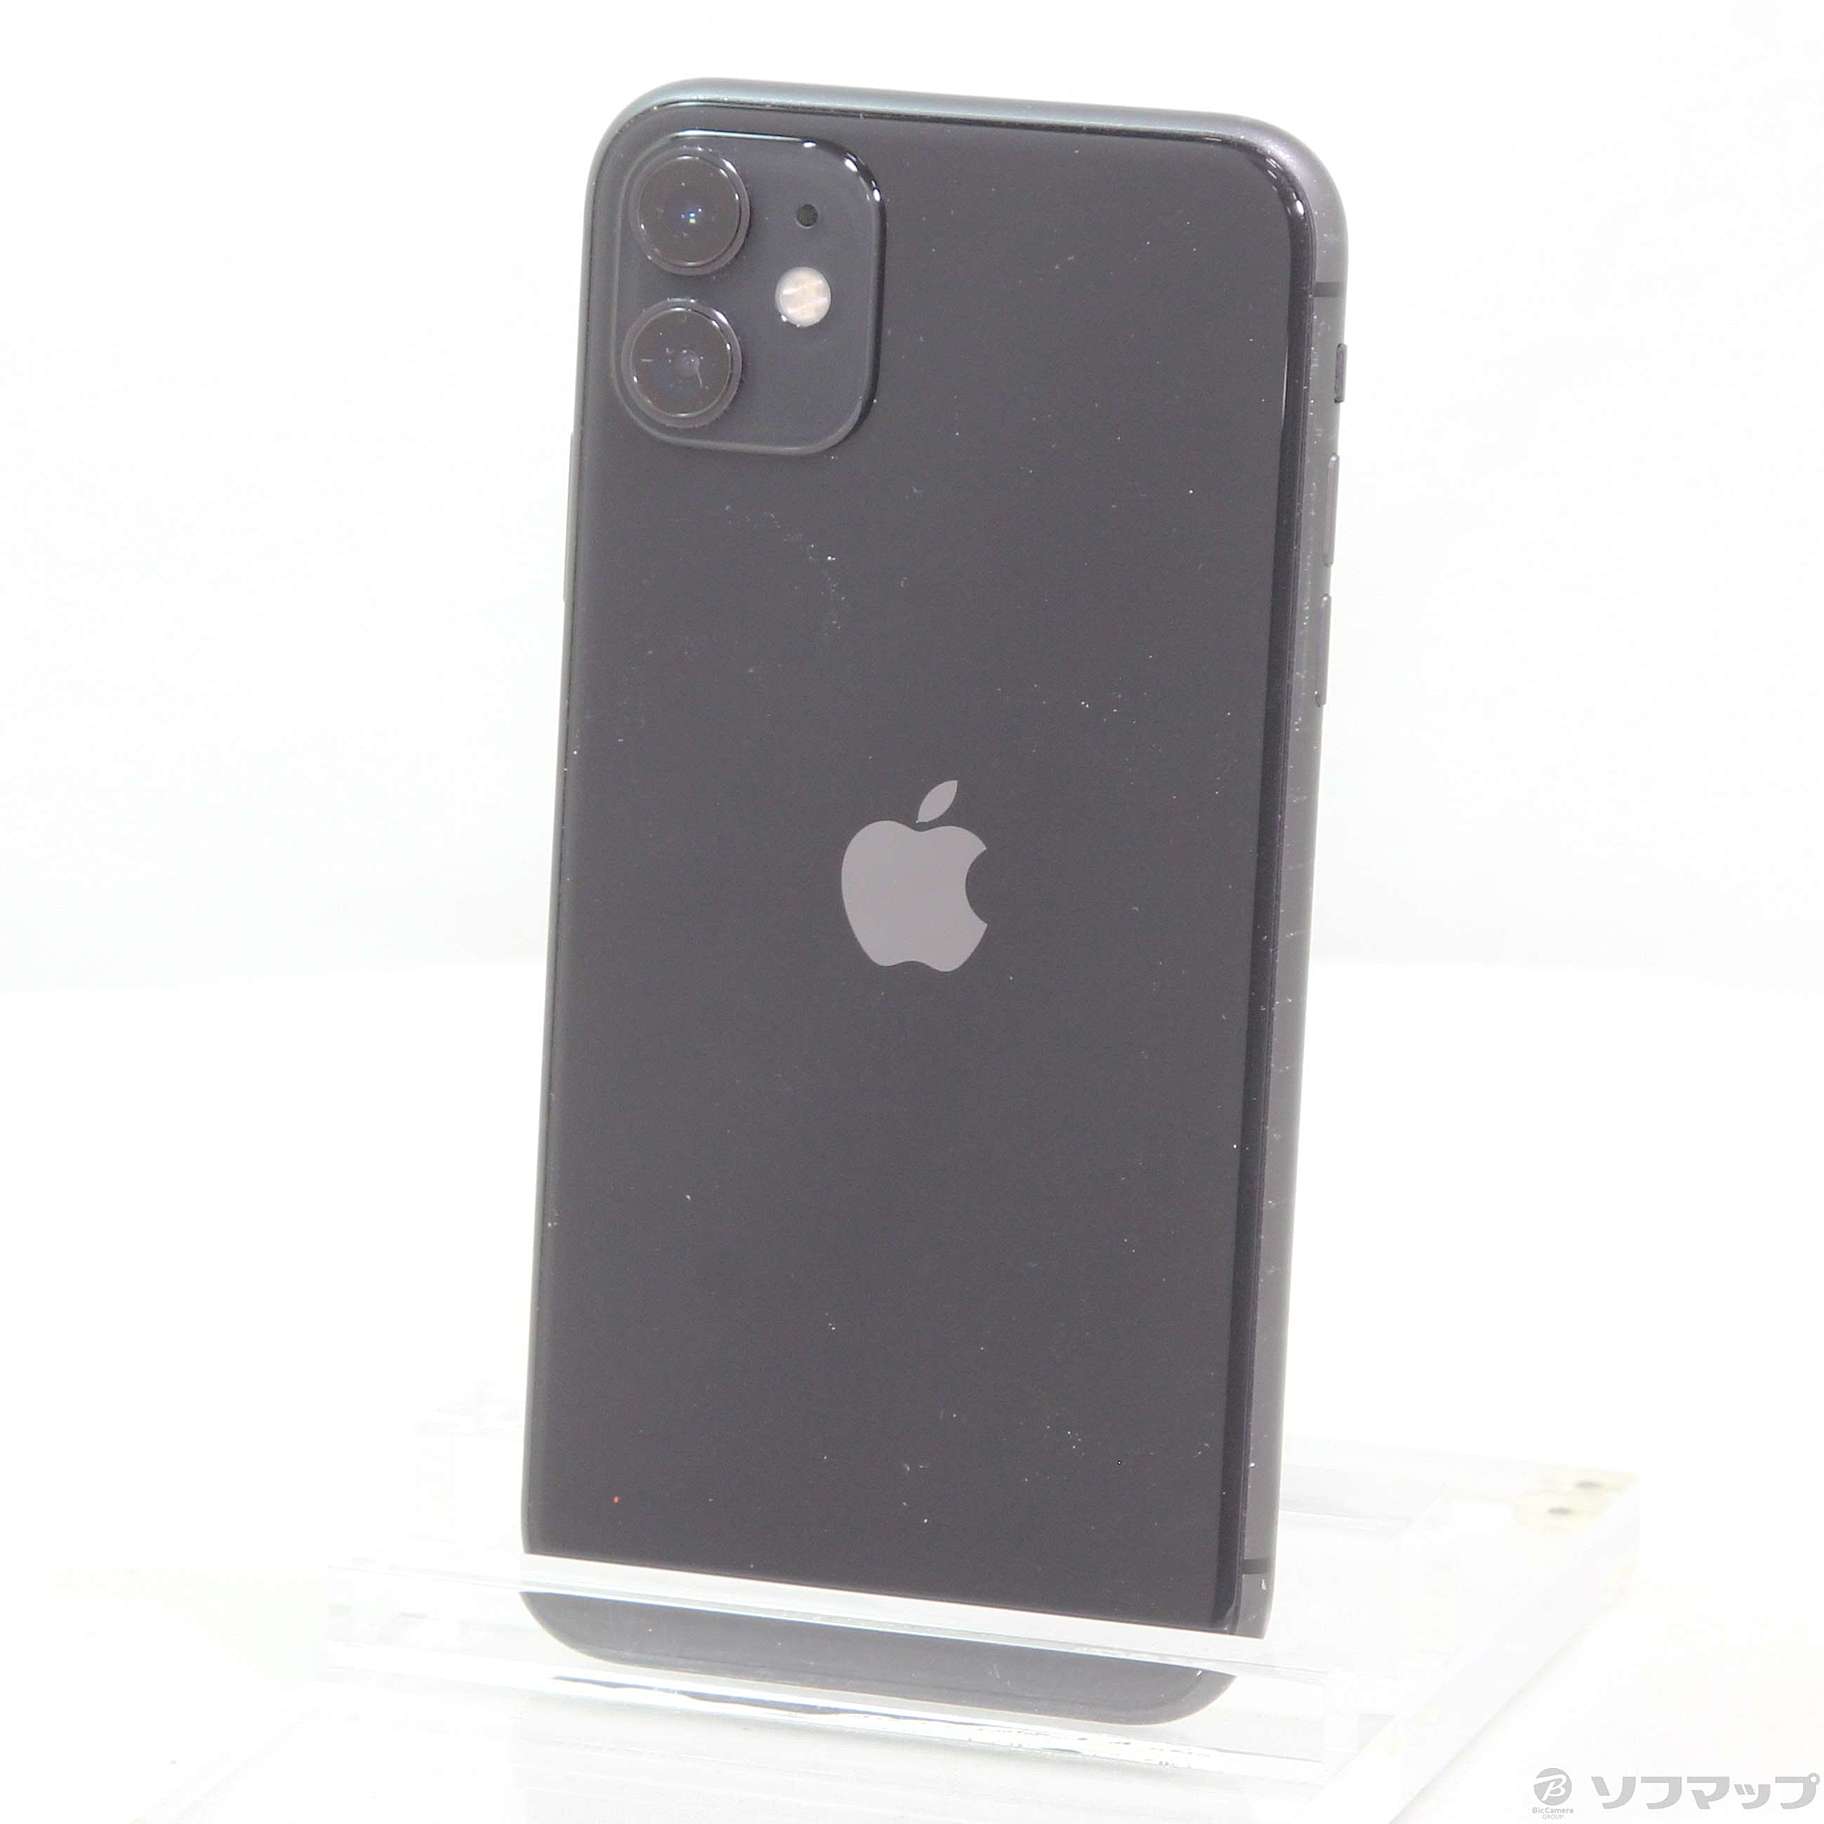 機種名iPhone11iPhone 11 ブラック 128 GB SIMフリー中国大陸版